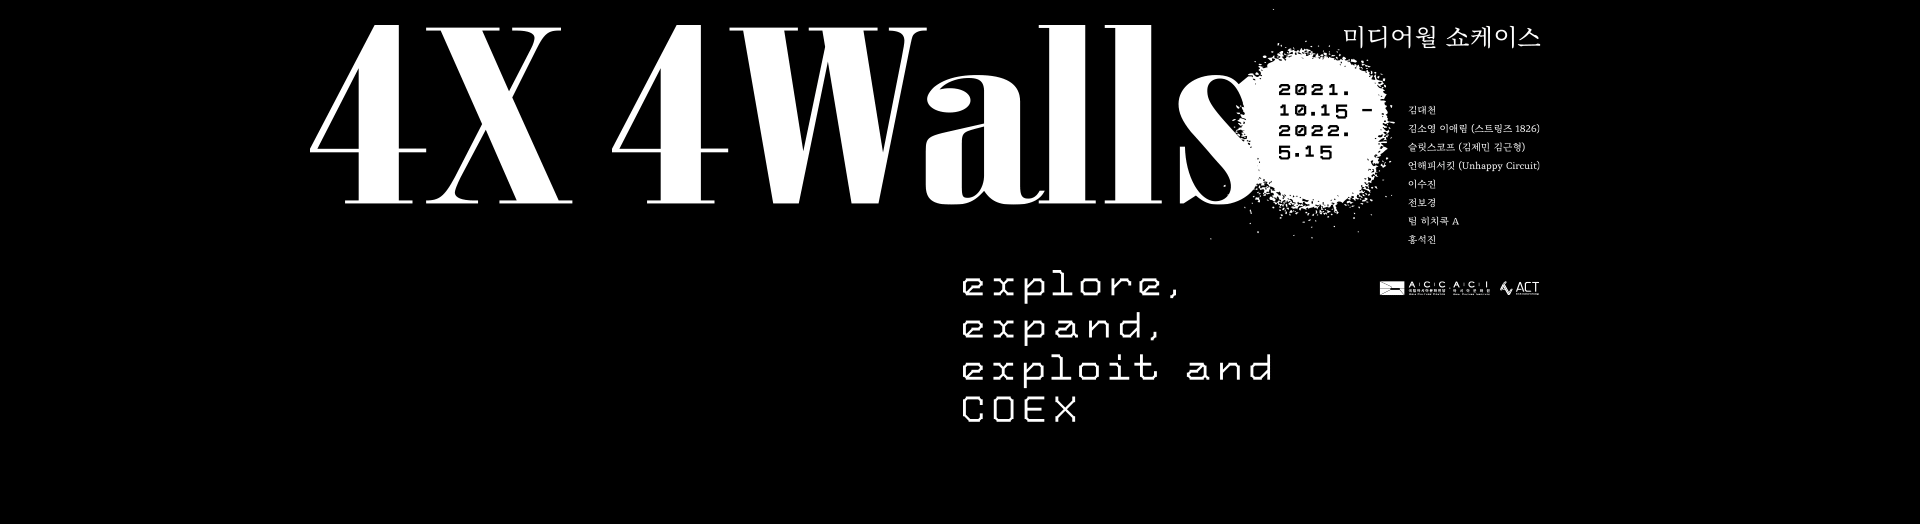 미디어월 쇼케이스 4X4WALLS
explore, expand, exploit and COEX